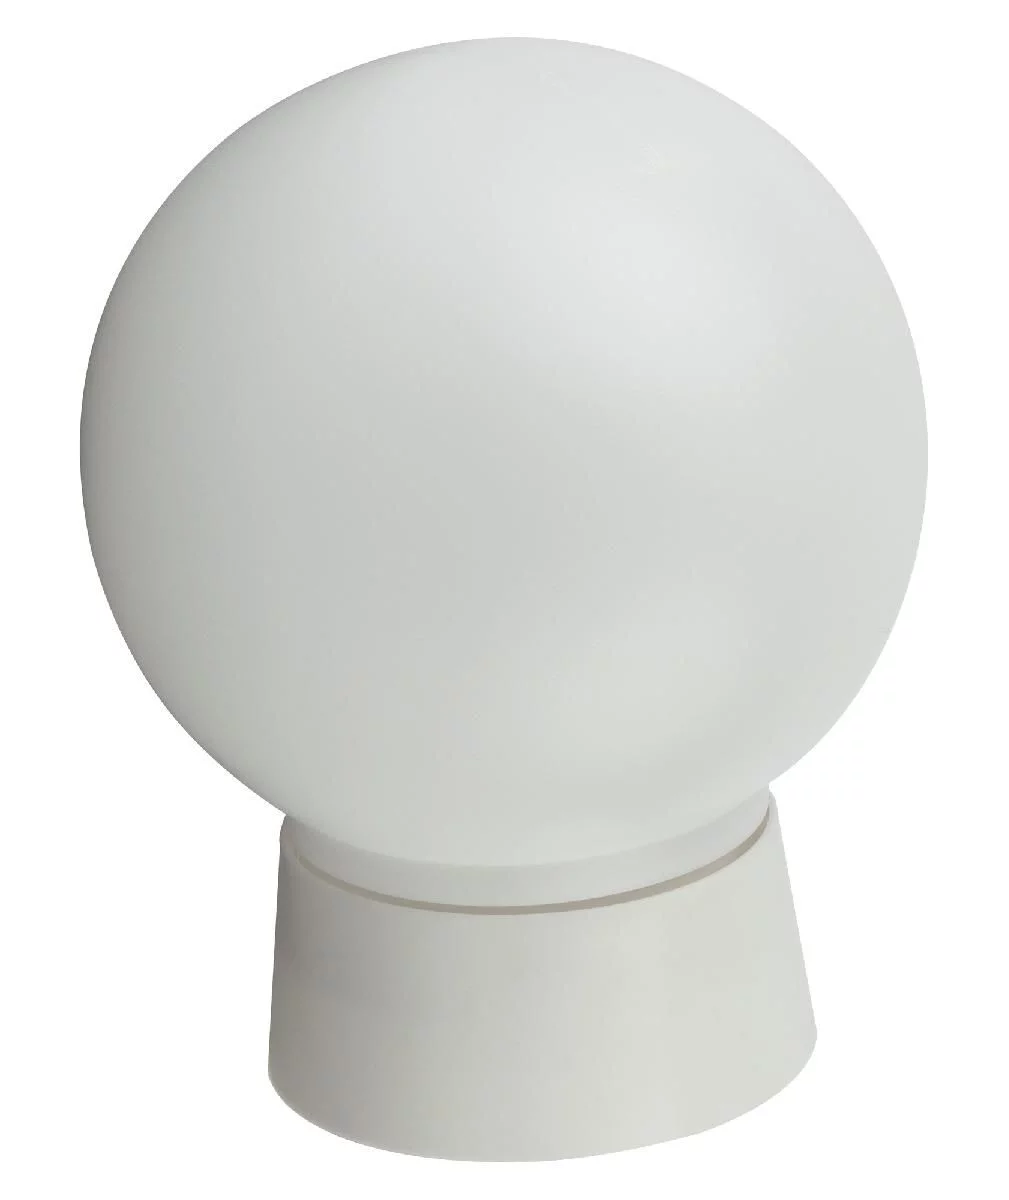 Светильник ЭРА НБП 01-60-004 c прямым основанием Гранат полиэтилен IP20 E27 max 60Вт D150 шар белый